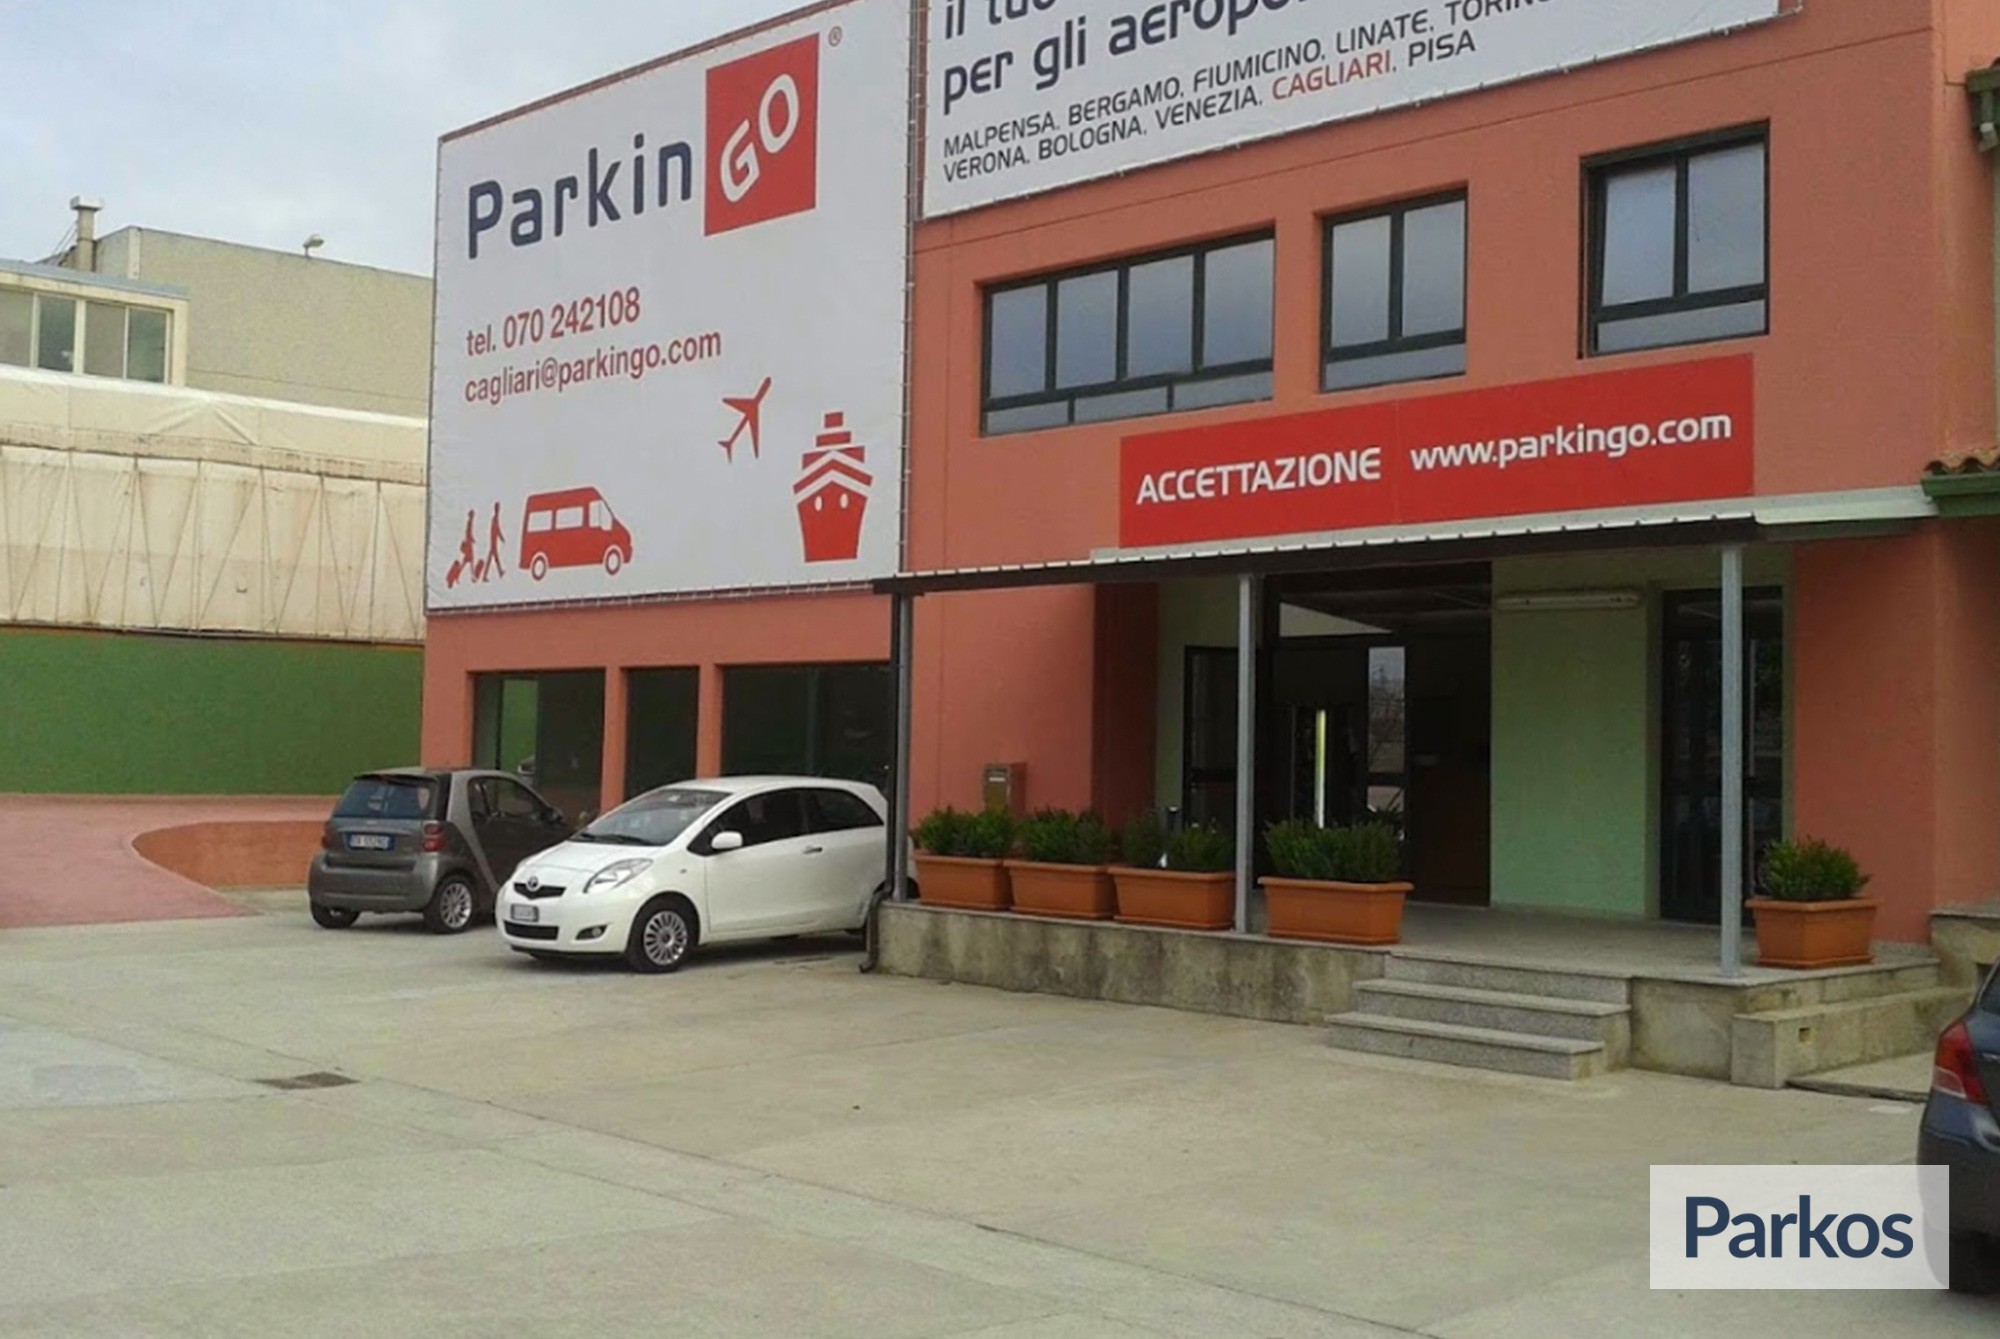 ParkinGO Cagliari (Paga in parcheggio) - Parcheggio Aeroporto Cagliari - picture 1